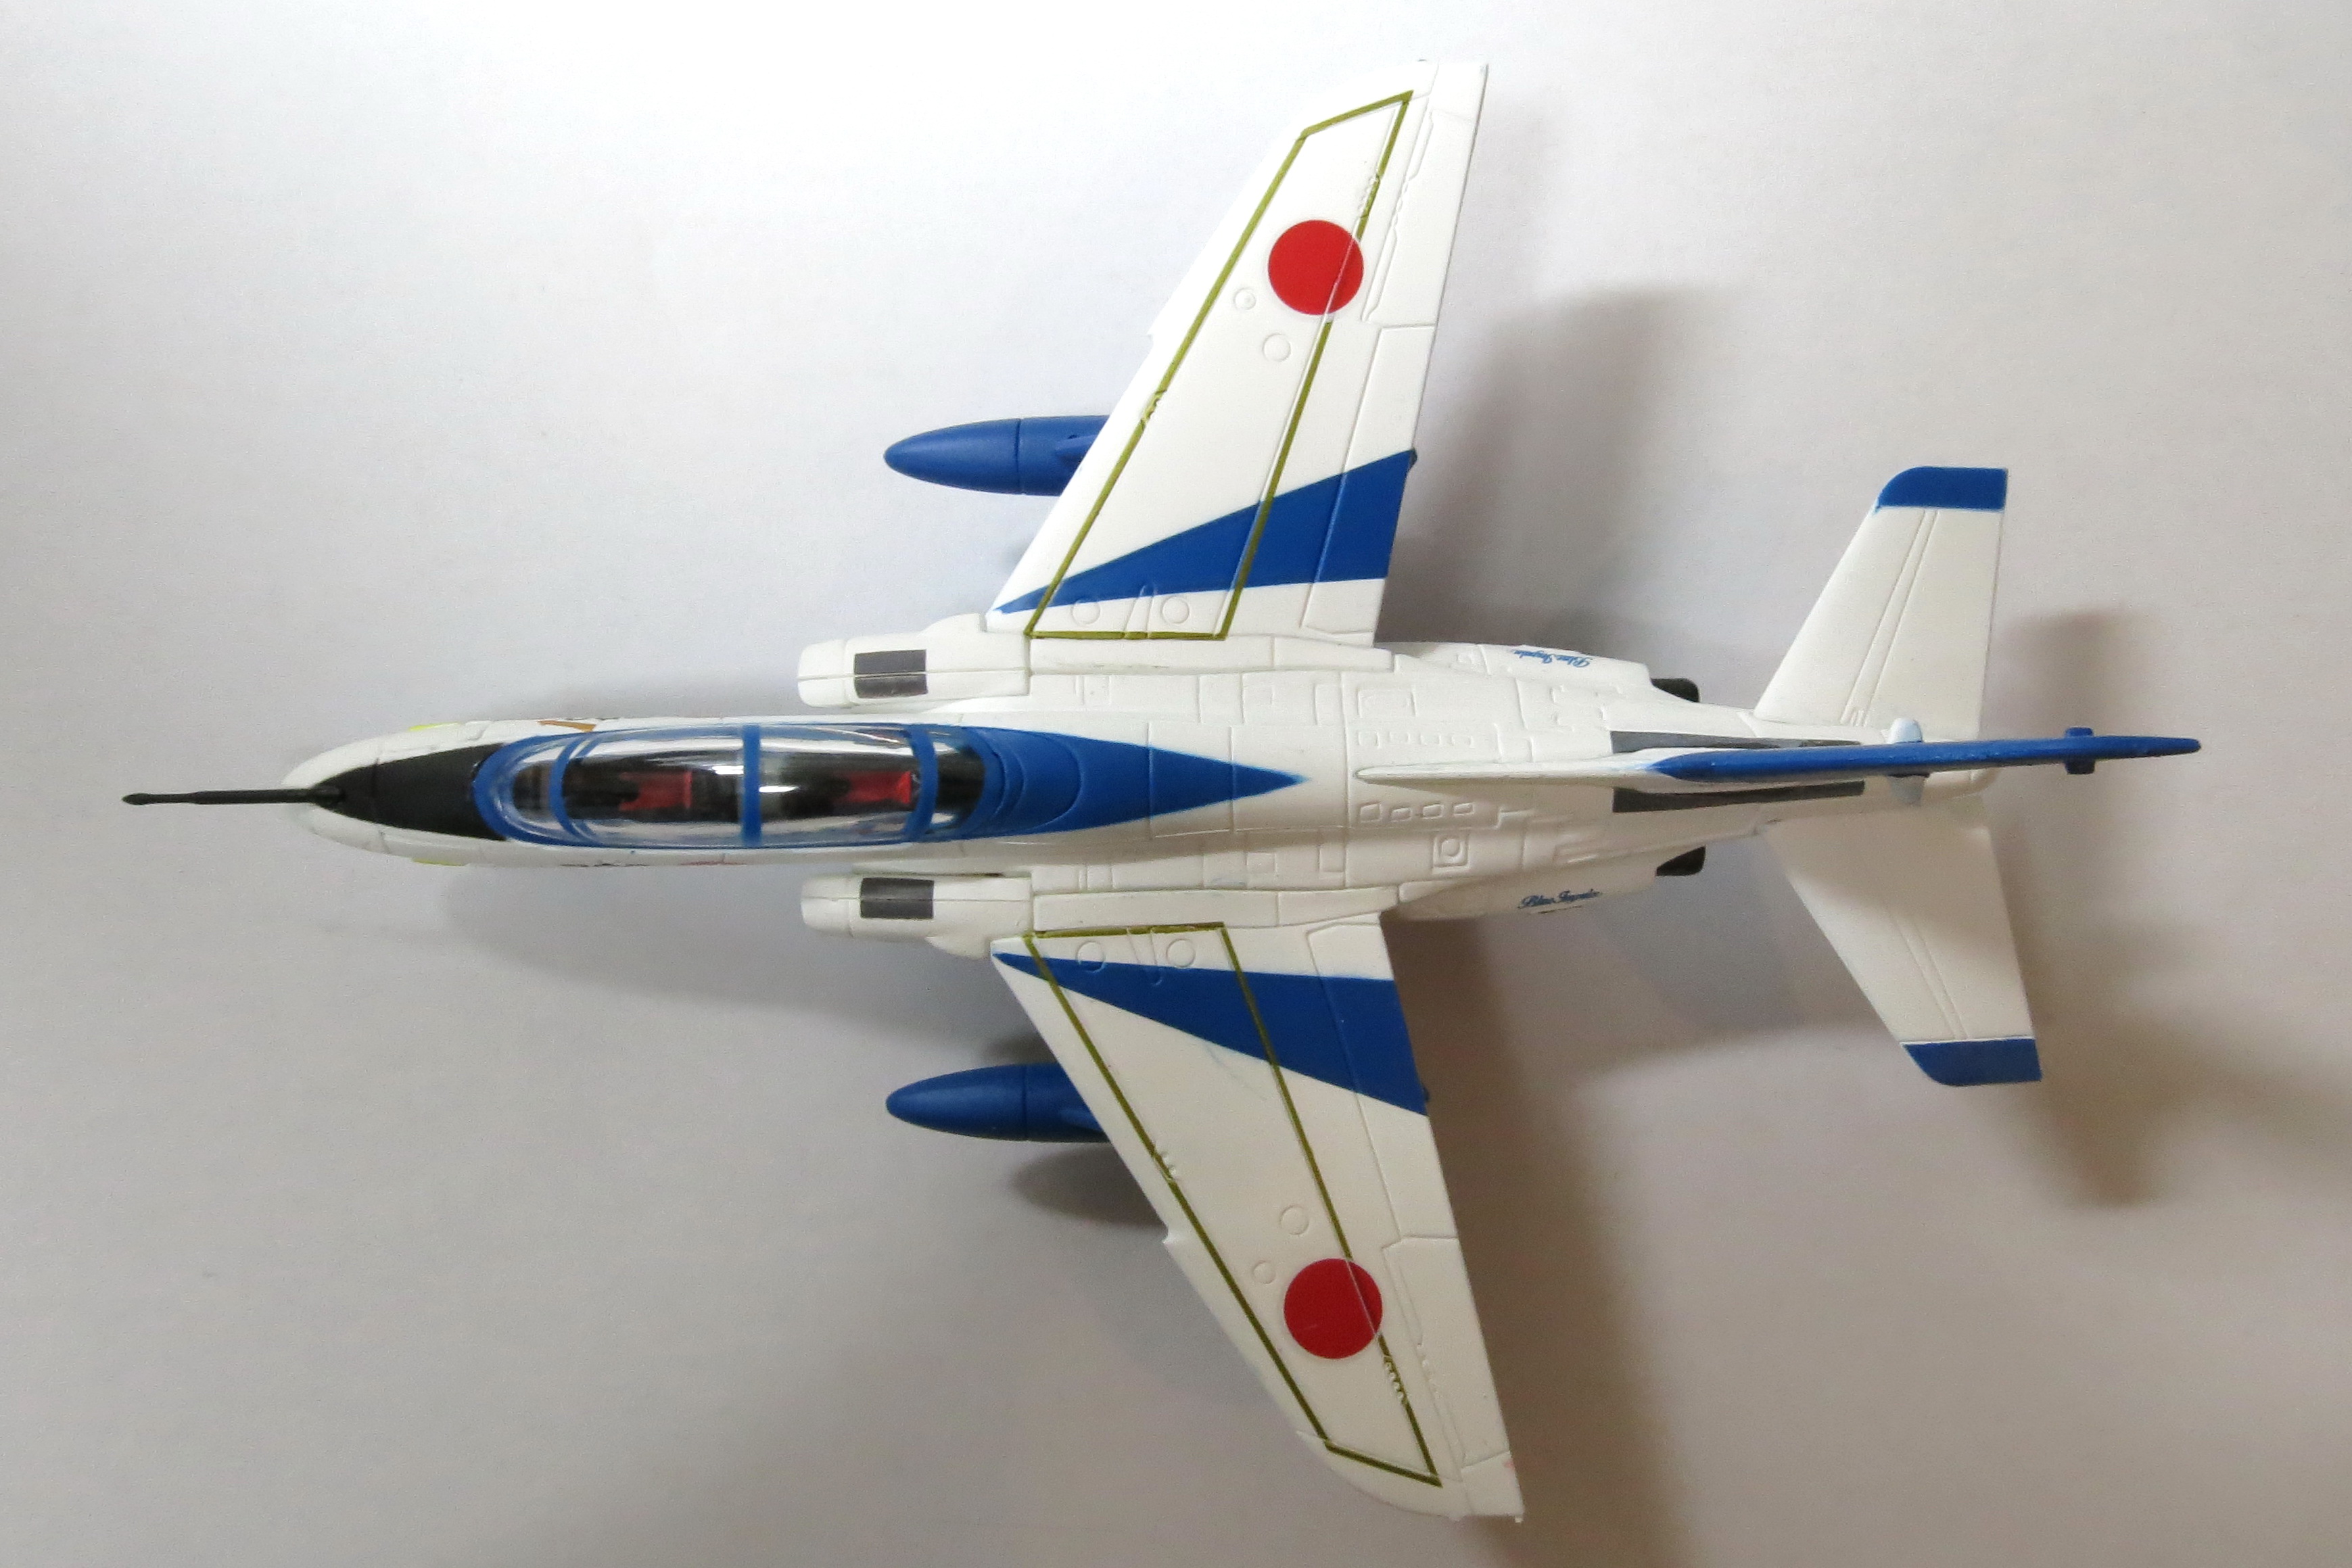 DEAGOSTINI_JASDF_T-4_Blue19